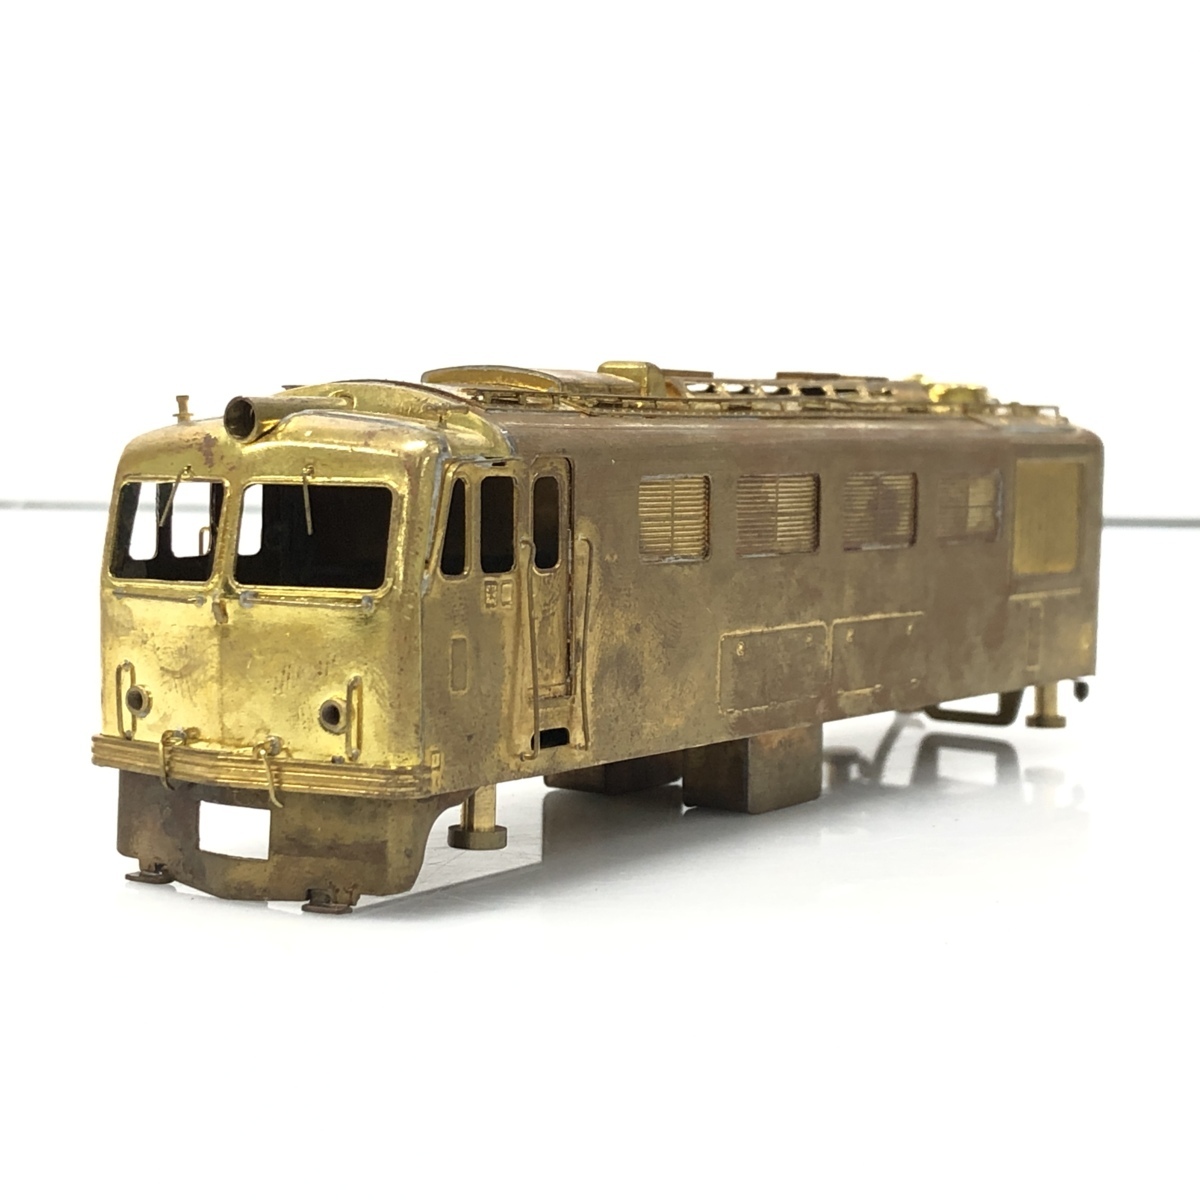 【買取実績】鉄道模型 EF58形 HOゲージ 真鍮製 組み立てキット | 法人対応の買取サービス 修理・販売の総合リユースサービス - つながるBOX